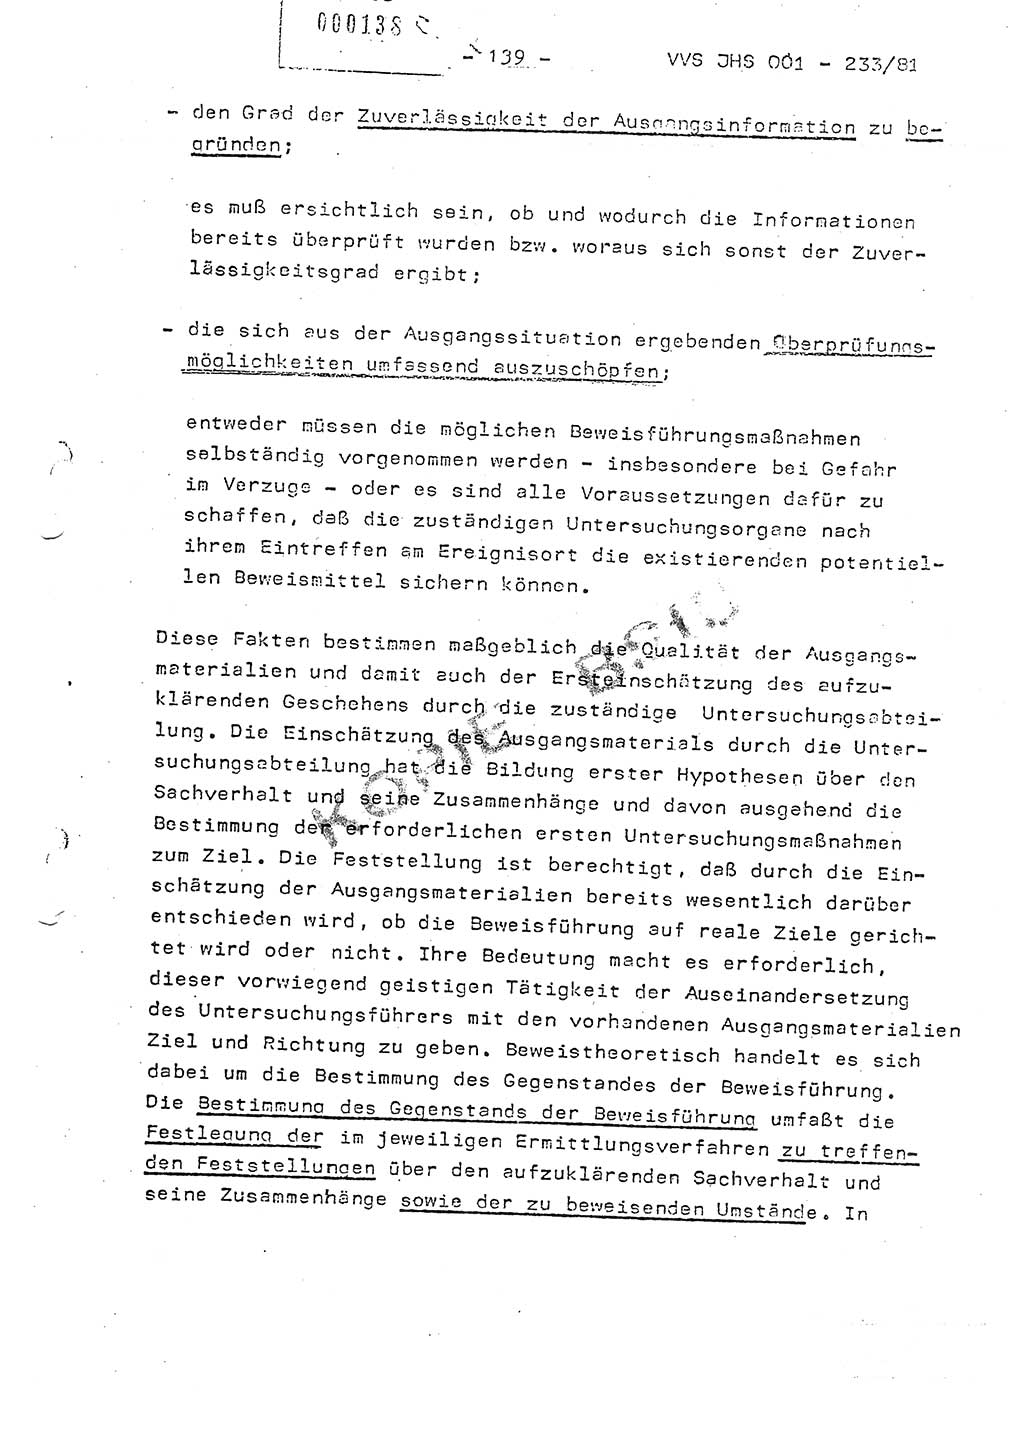 Dissertation Oberstleutnant Horst Zank (JHS), Oberstleutnant Dr. Karl-Heinz Knoblauch (JHS), Oberstleutnant Gustav-Adolf Kowalewski (HA Ⅸ), Oberstleutnant Wolfgang Plötner (HA Ⅸ), Ministerium für Staatssicherheit (MfS) [Deutsche Demokratische Republik (DDR)], Juristische Hochschule (JHS), Vertrauliche Verschlußsache (VVS) o001-233/81, Potsdam 1981, Blatt 139 (Diss. MfS DDR JHS VVS o001-233/81 1981, Bl. 139)